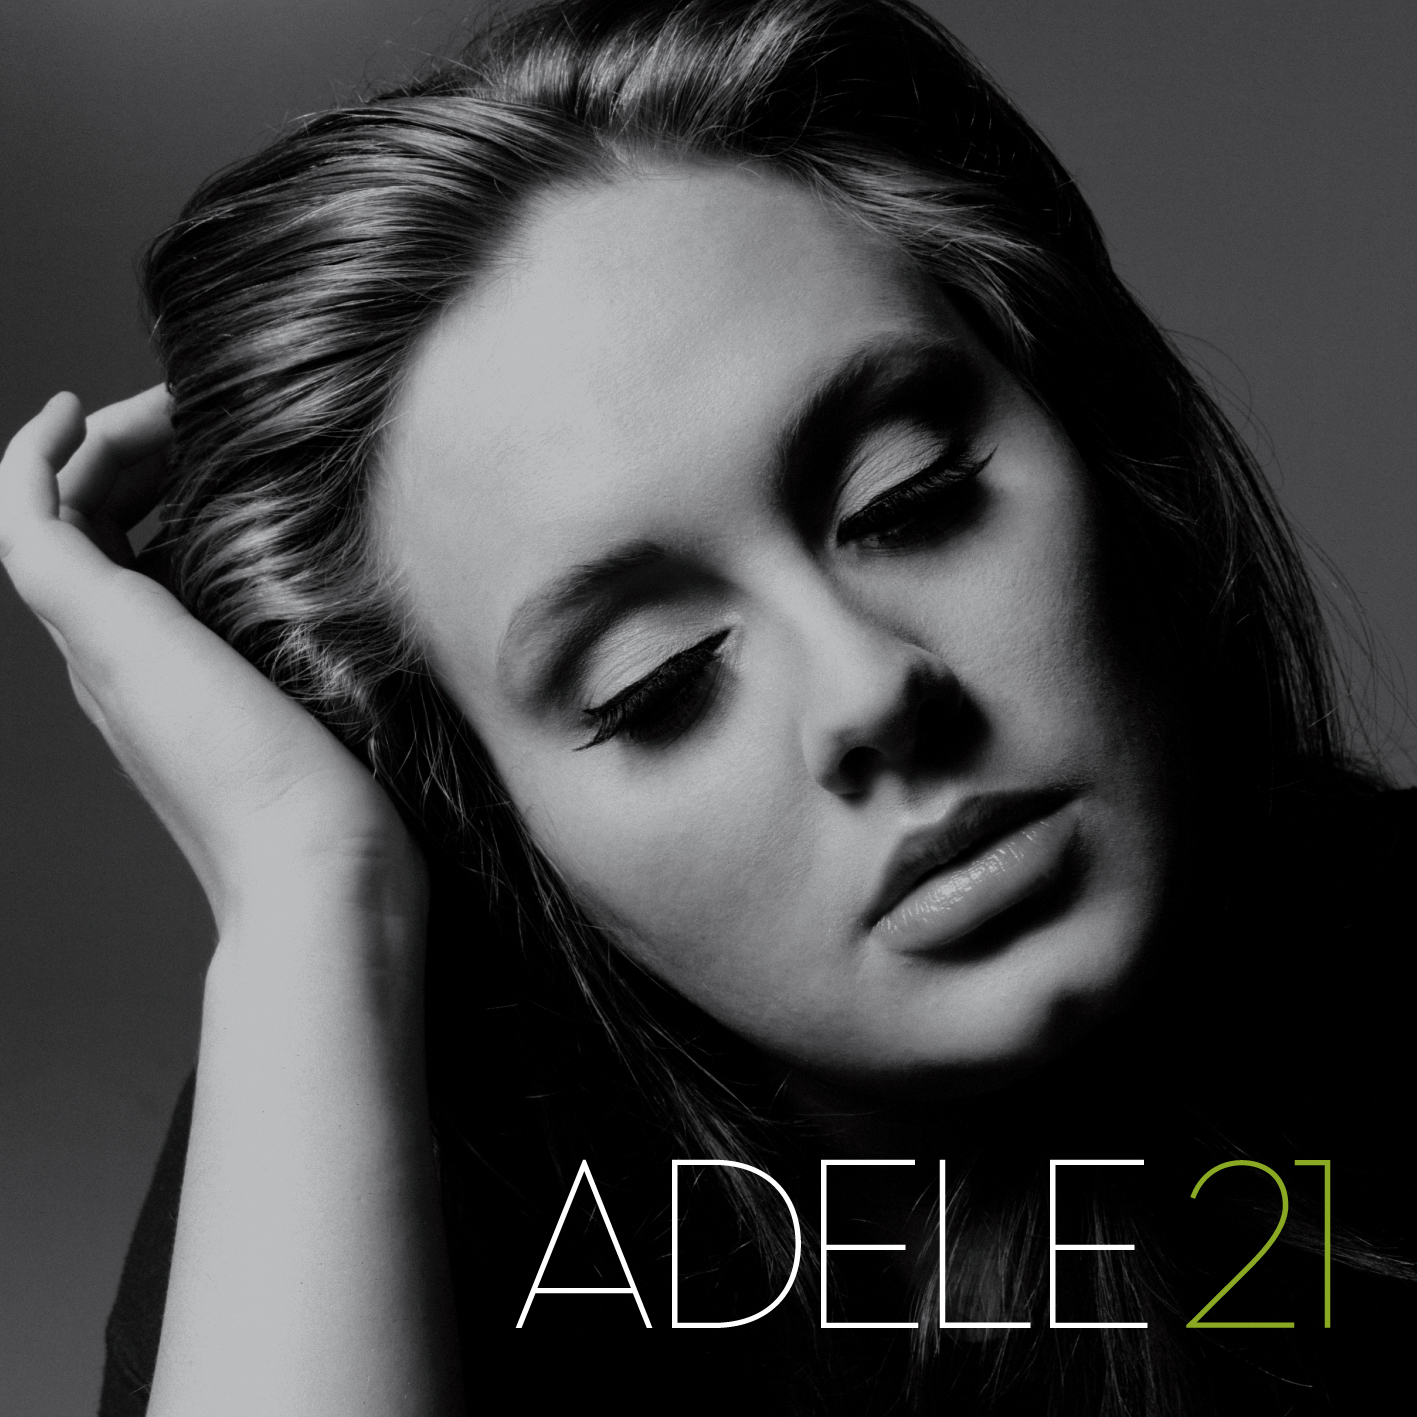 Adele+21+cd+artwork